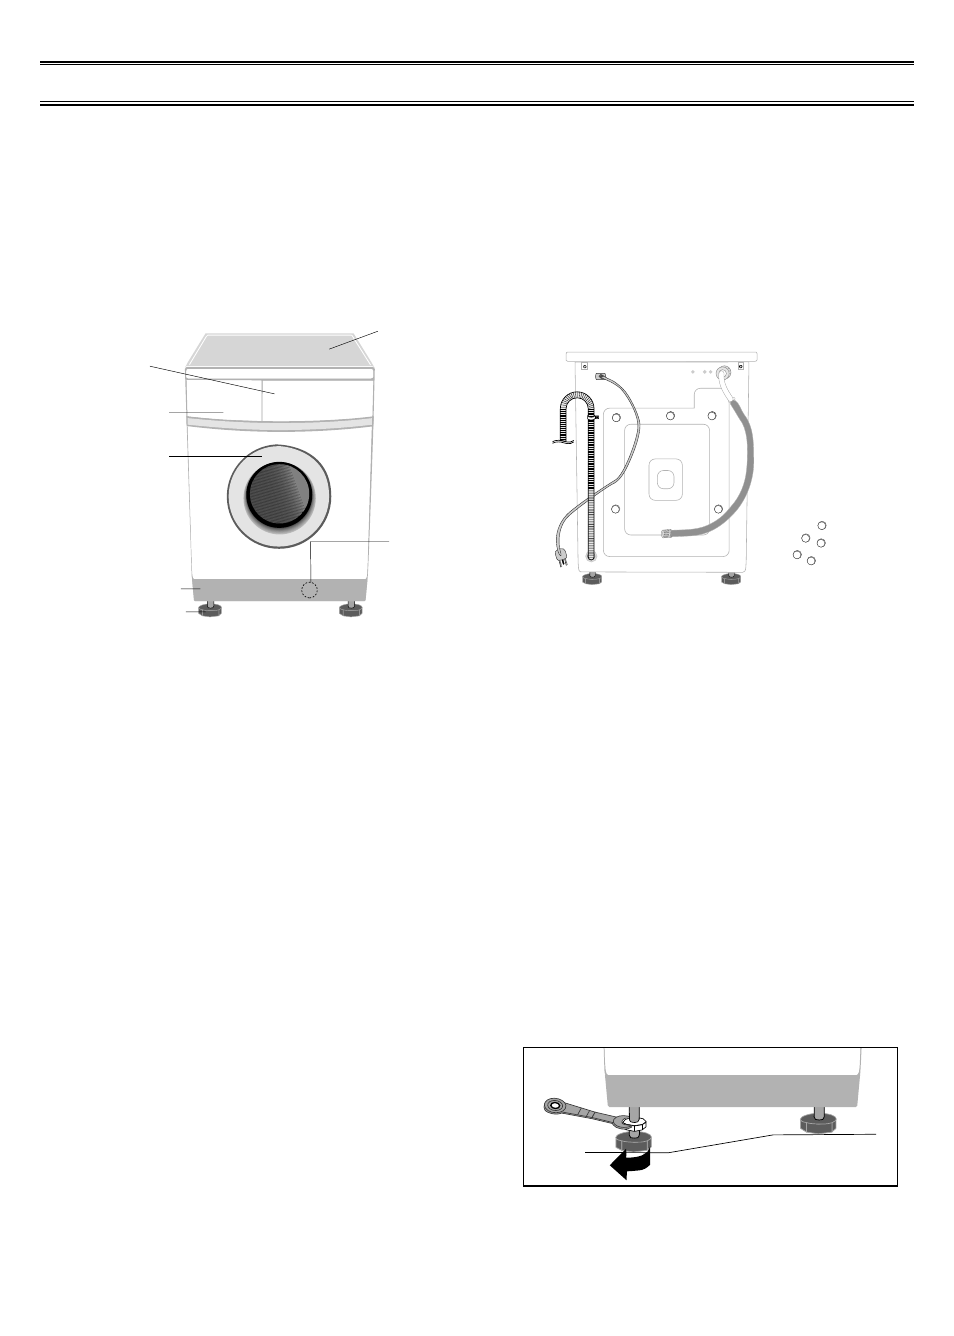 Installation, Waschmaschine auspacken, Ihre waschmaschine auf einen blick | Standort wahlen, Stellfuße ausrichten, Ihre waschmaschine auf einen blick standort wählen, Stellfüße ausrichten | Samsung F843 Benutzerhandbuch | Seite 3 / 13